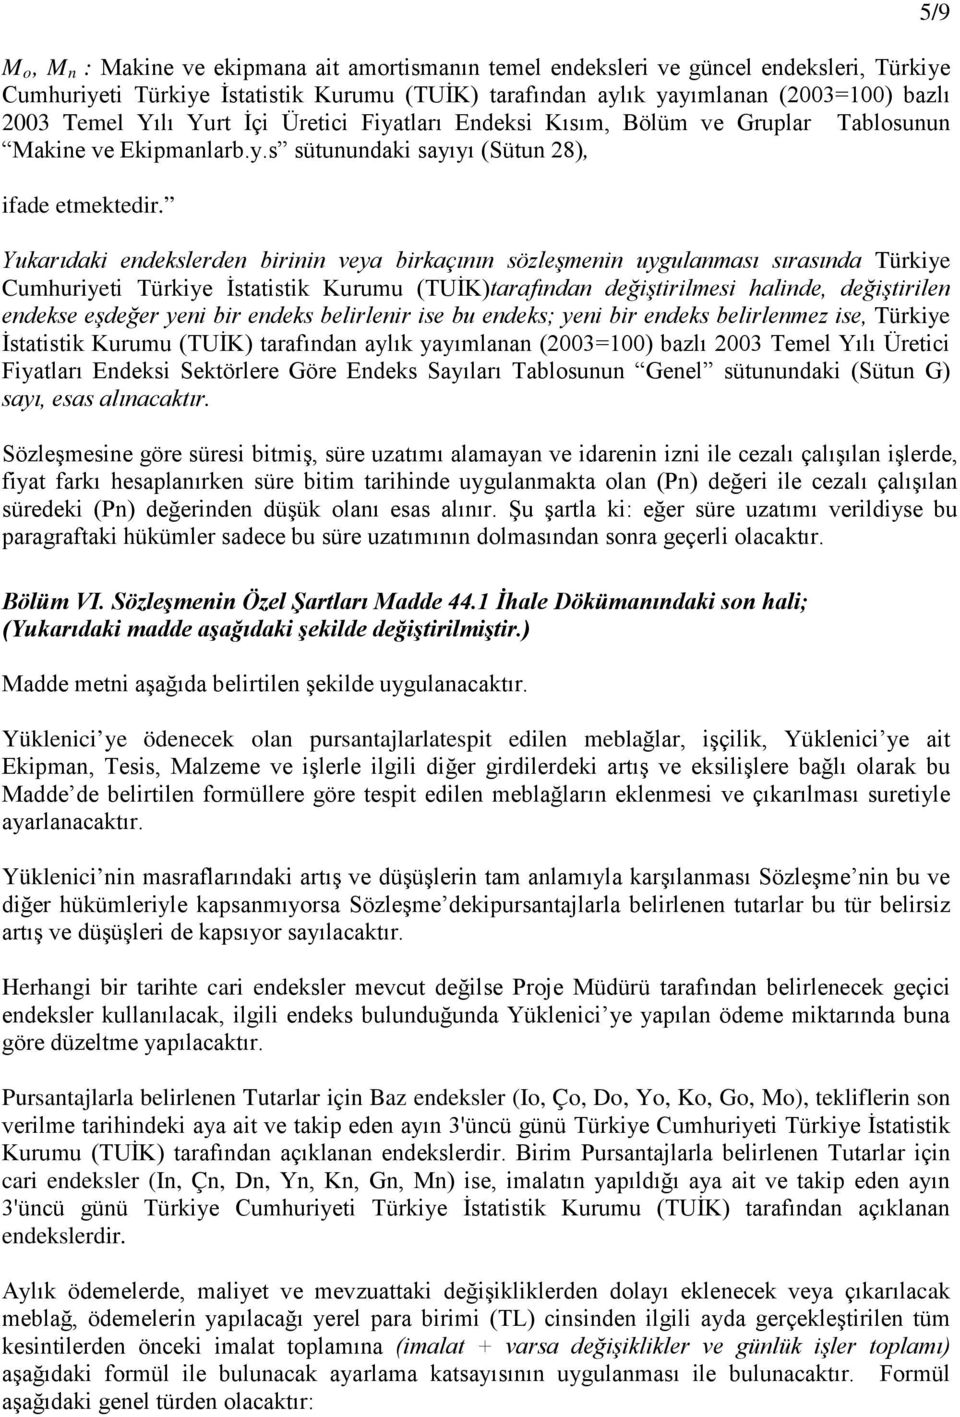 Yukarıdaki endekslerden birinin veya birkaçının sözleşmenin uygulanması sırasında Türkiye Cumhuriyeti Türkiye İstatistik Kurumu (TUİK)tarafından değiştirilmesi halinde, değiştirilen endekse eşdeğer